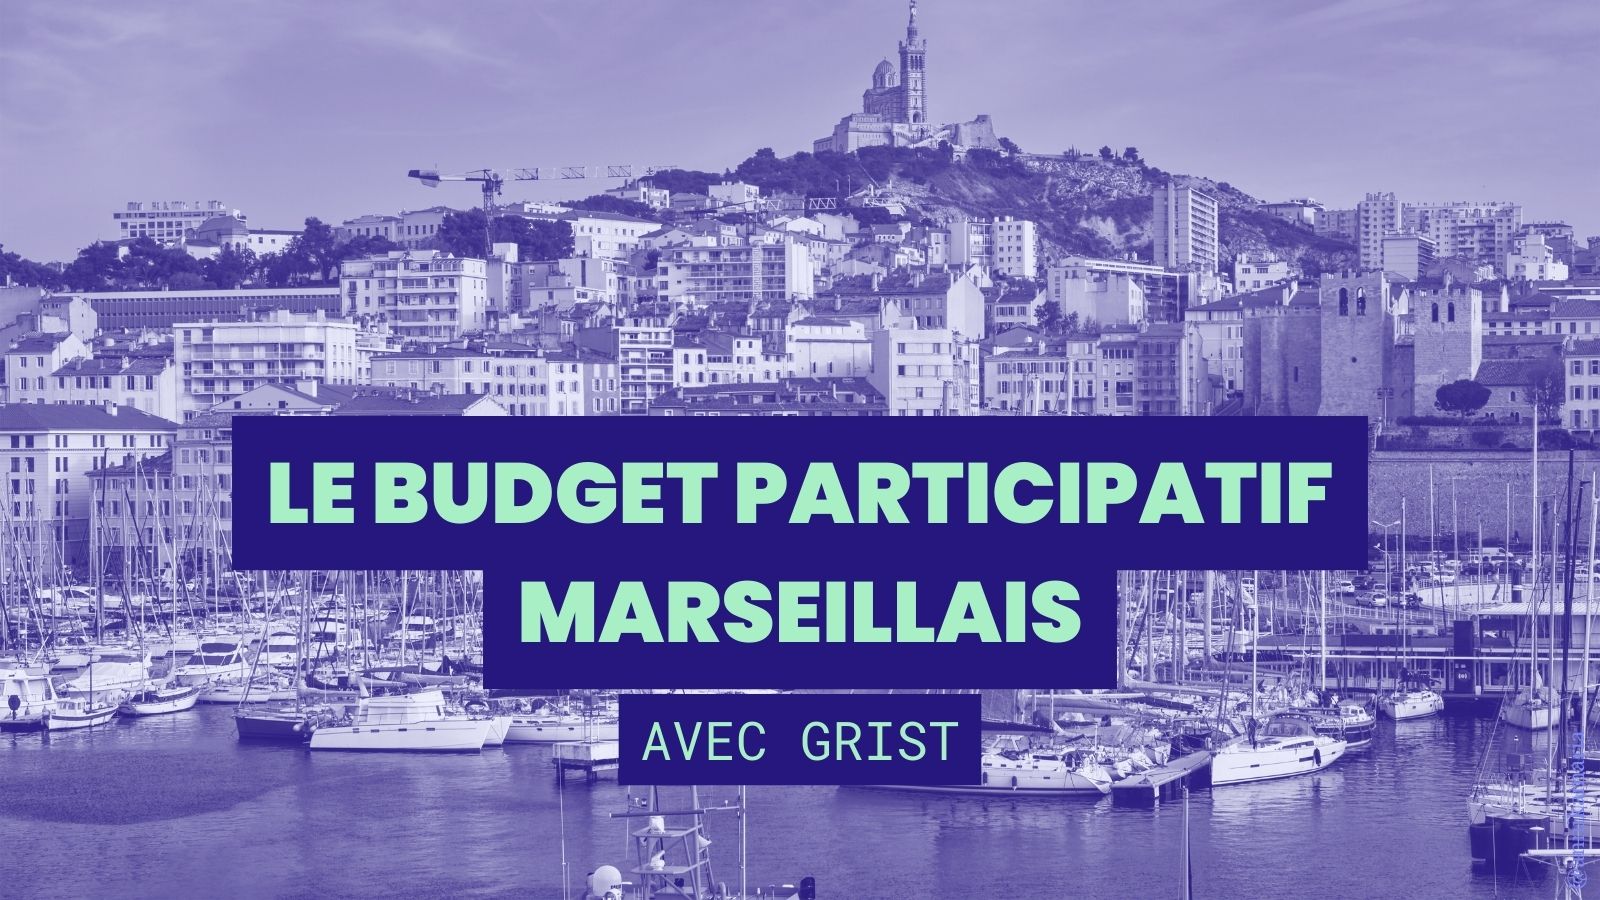 Le budget participatif marseillais avec Grist